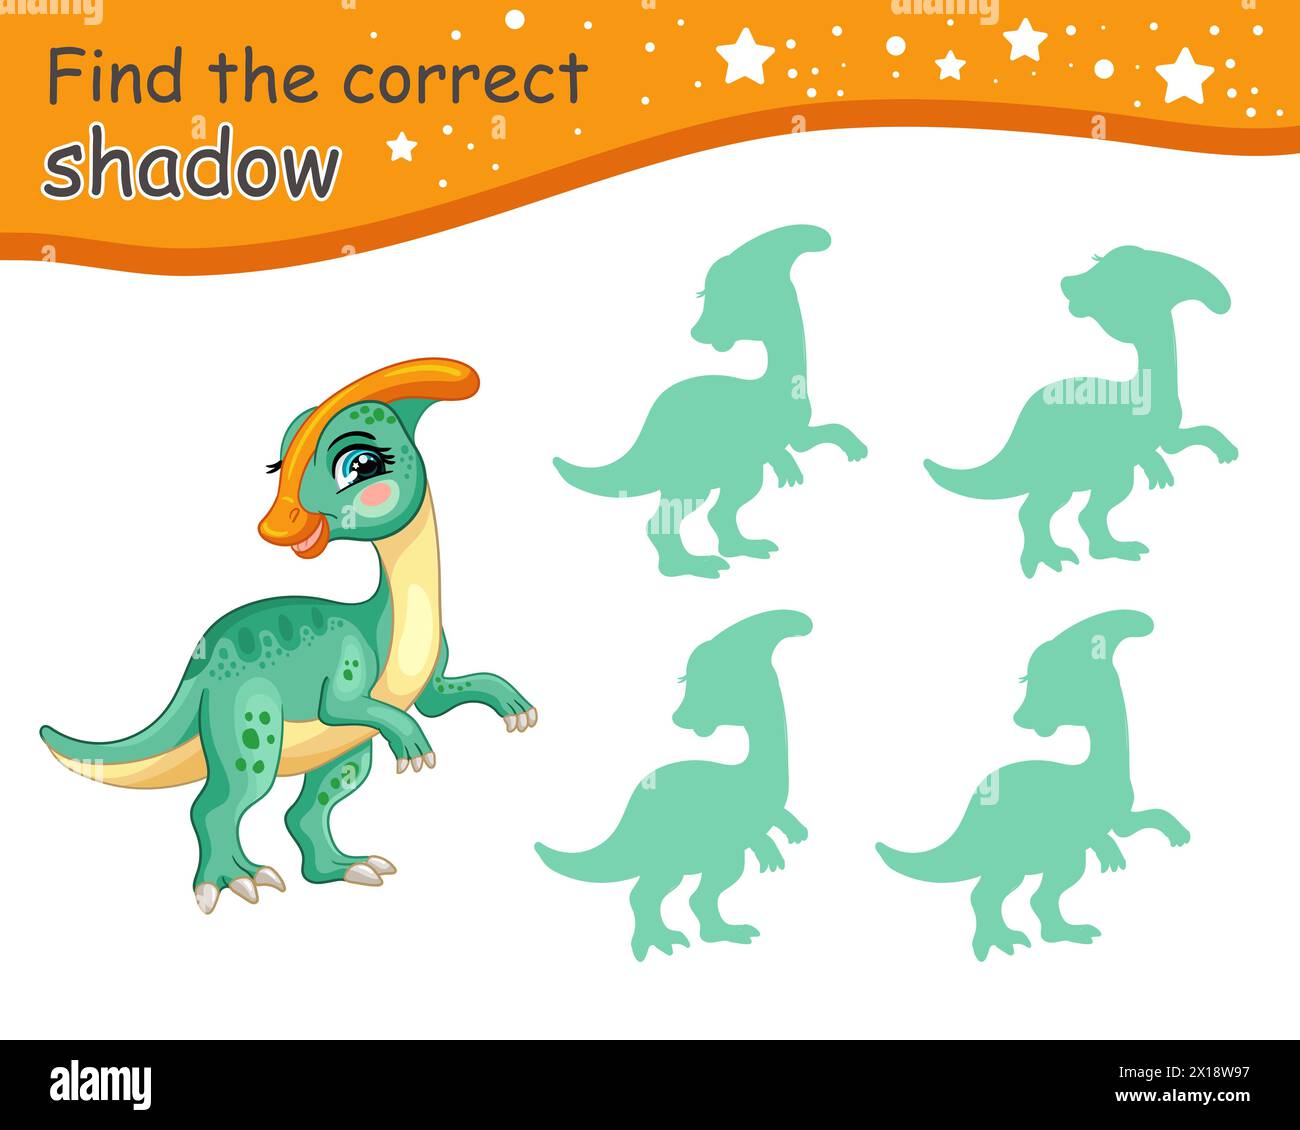 Suchen Sie den richtigen Schatten. Niedlicher Cartoon parasaurolophus Dinosaurier. Pädagogisches Matching-Spiel für Kinder mit Zeichentrickfigur. Aktivität, Logikspiel für KI Stock Vektor